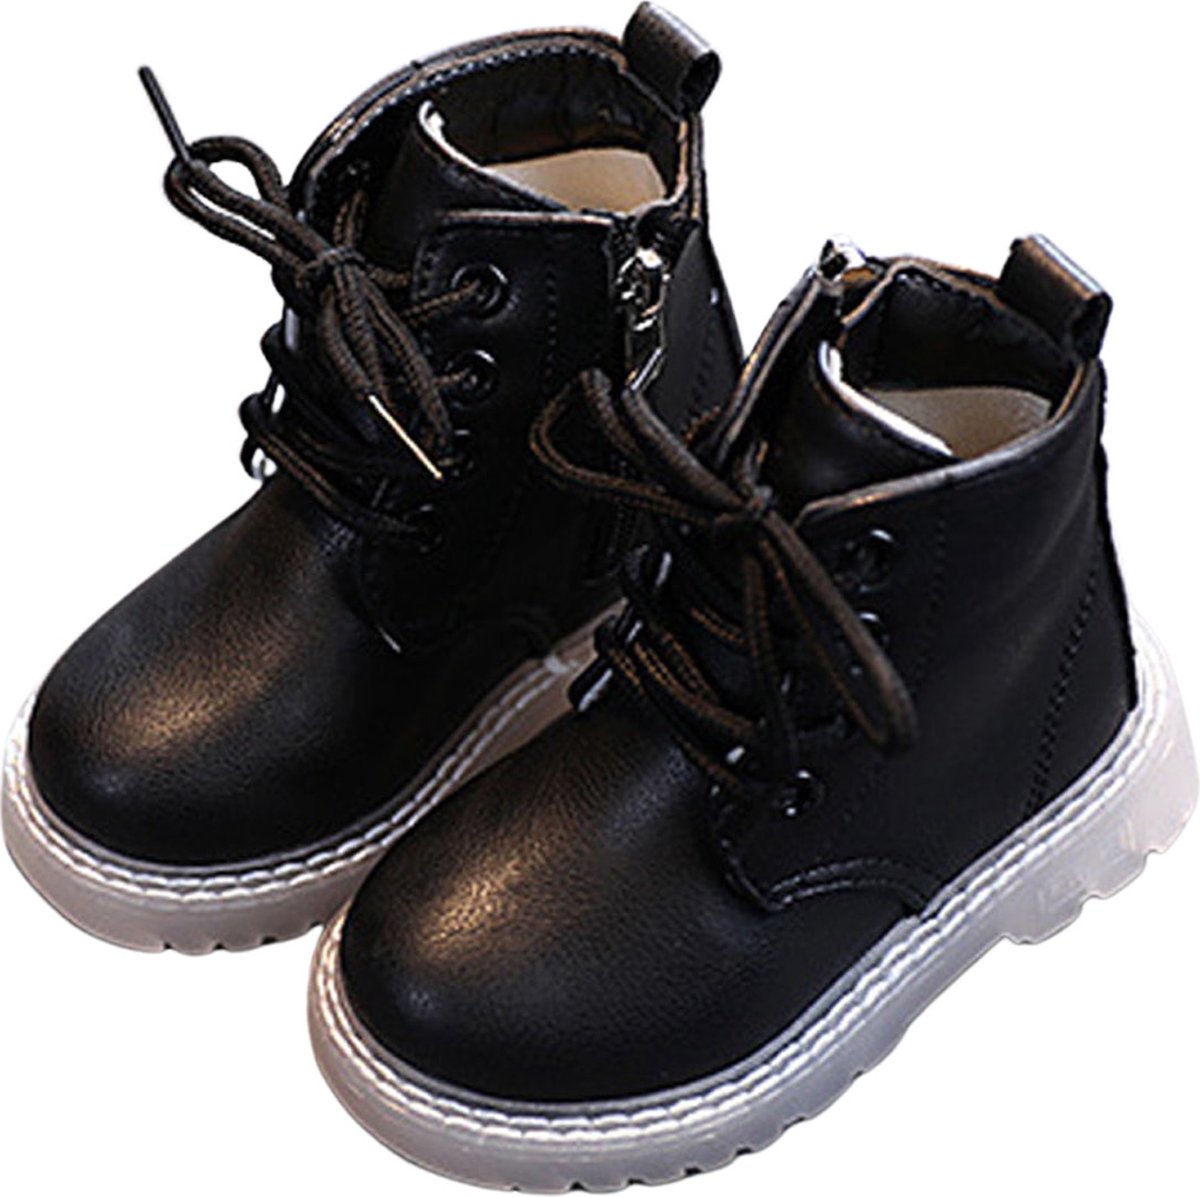 Baby Laarzen, Britse Stijl | Zwarte Laarzen | 24 to 30 maanden | Zij rits sluiting